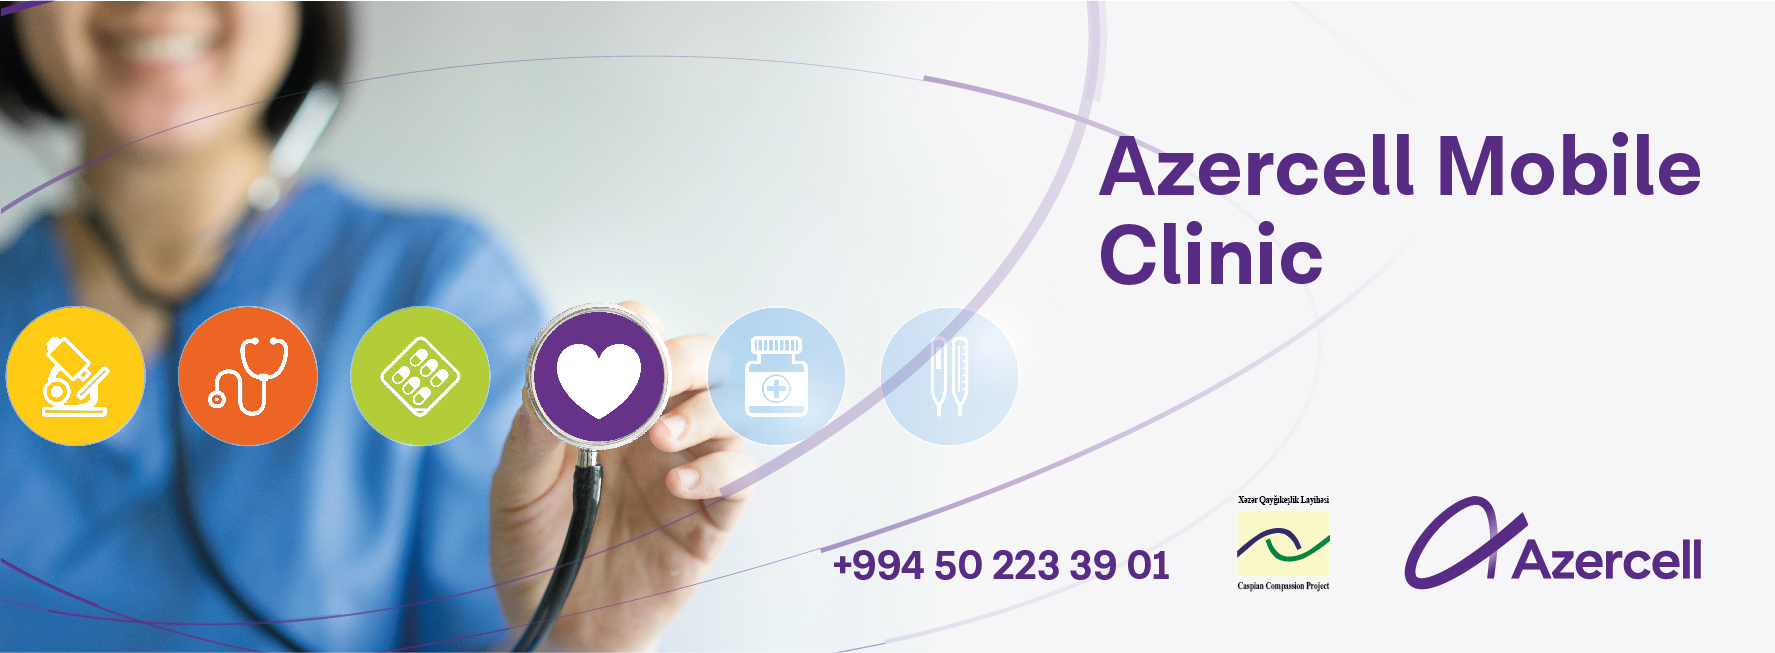 Azercell-in Mobil Diş və Göz Klinikaları təmənnasız xidməti davam etdirir